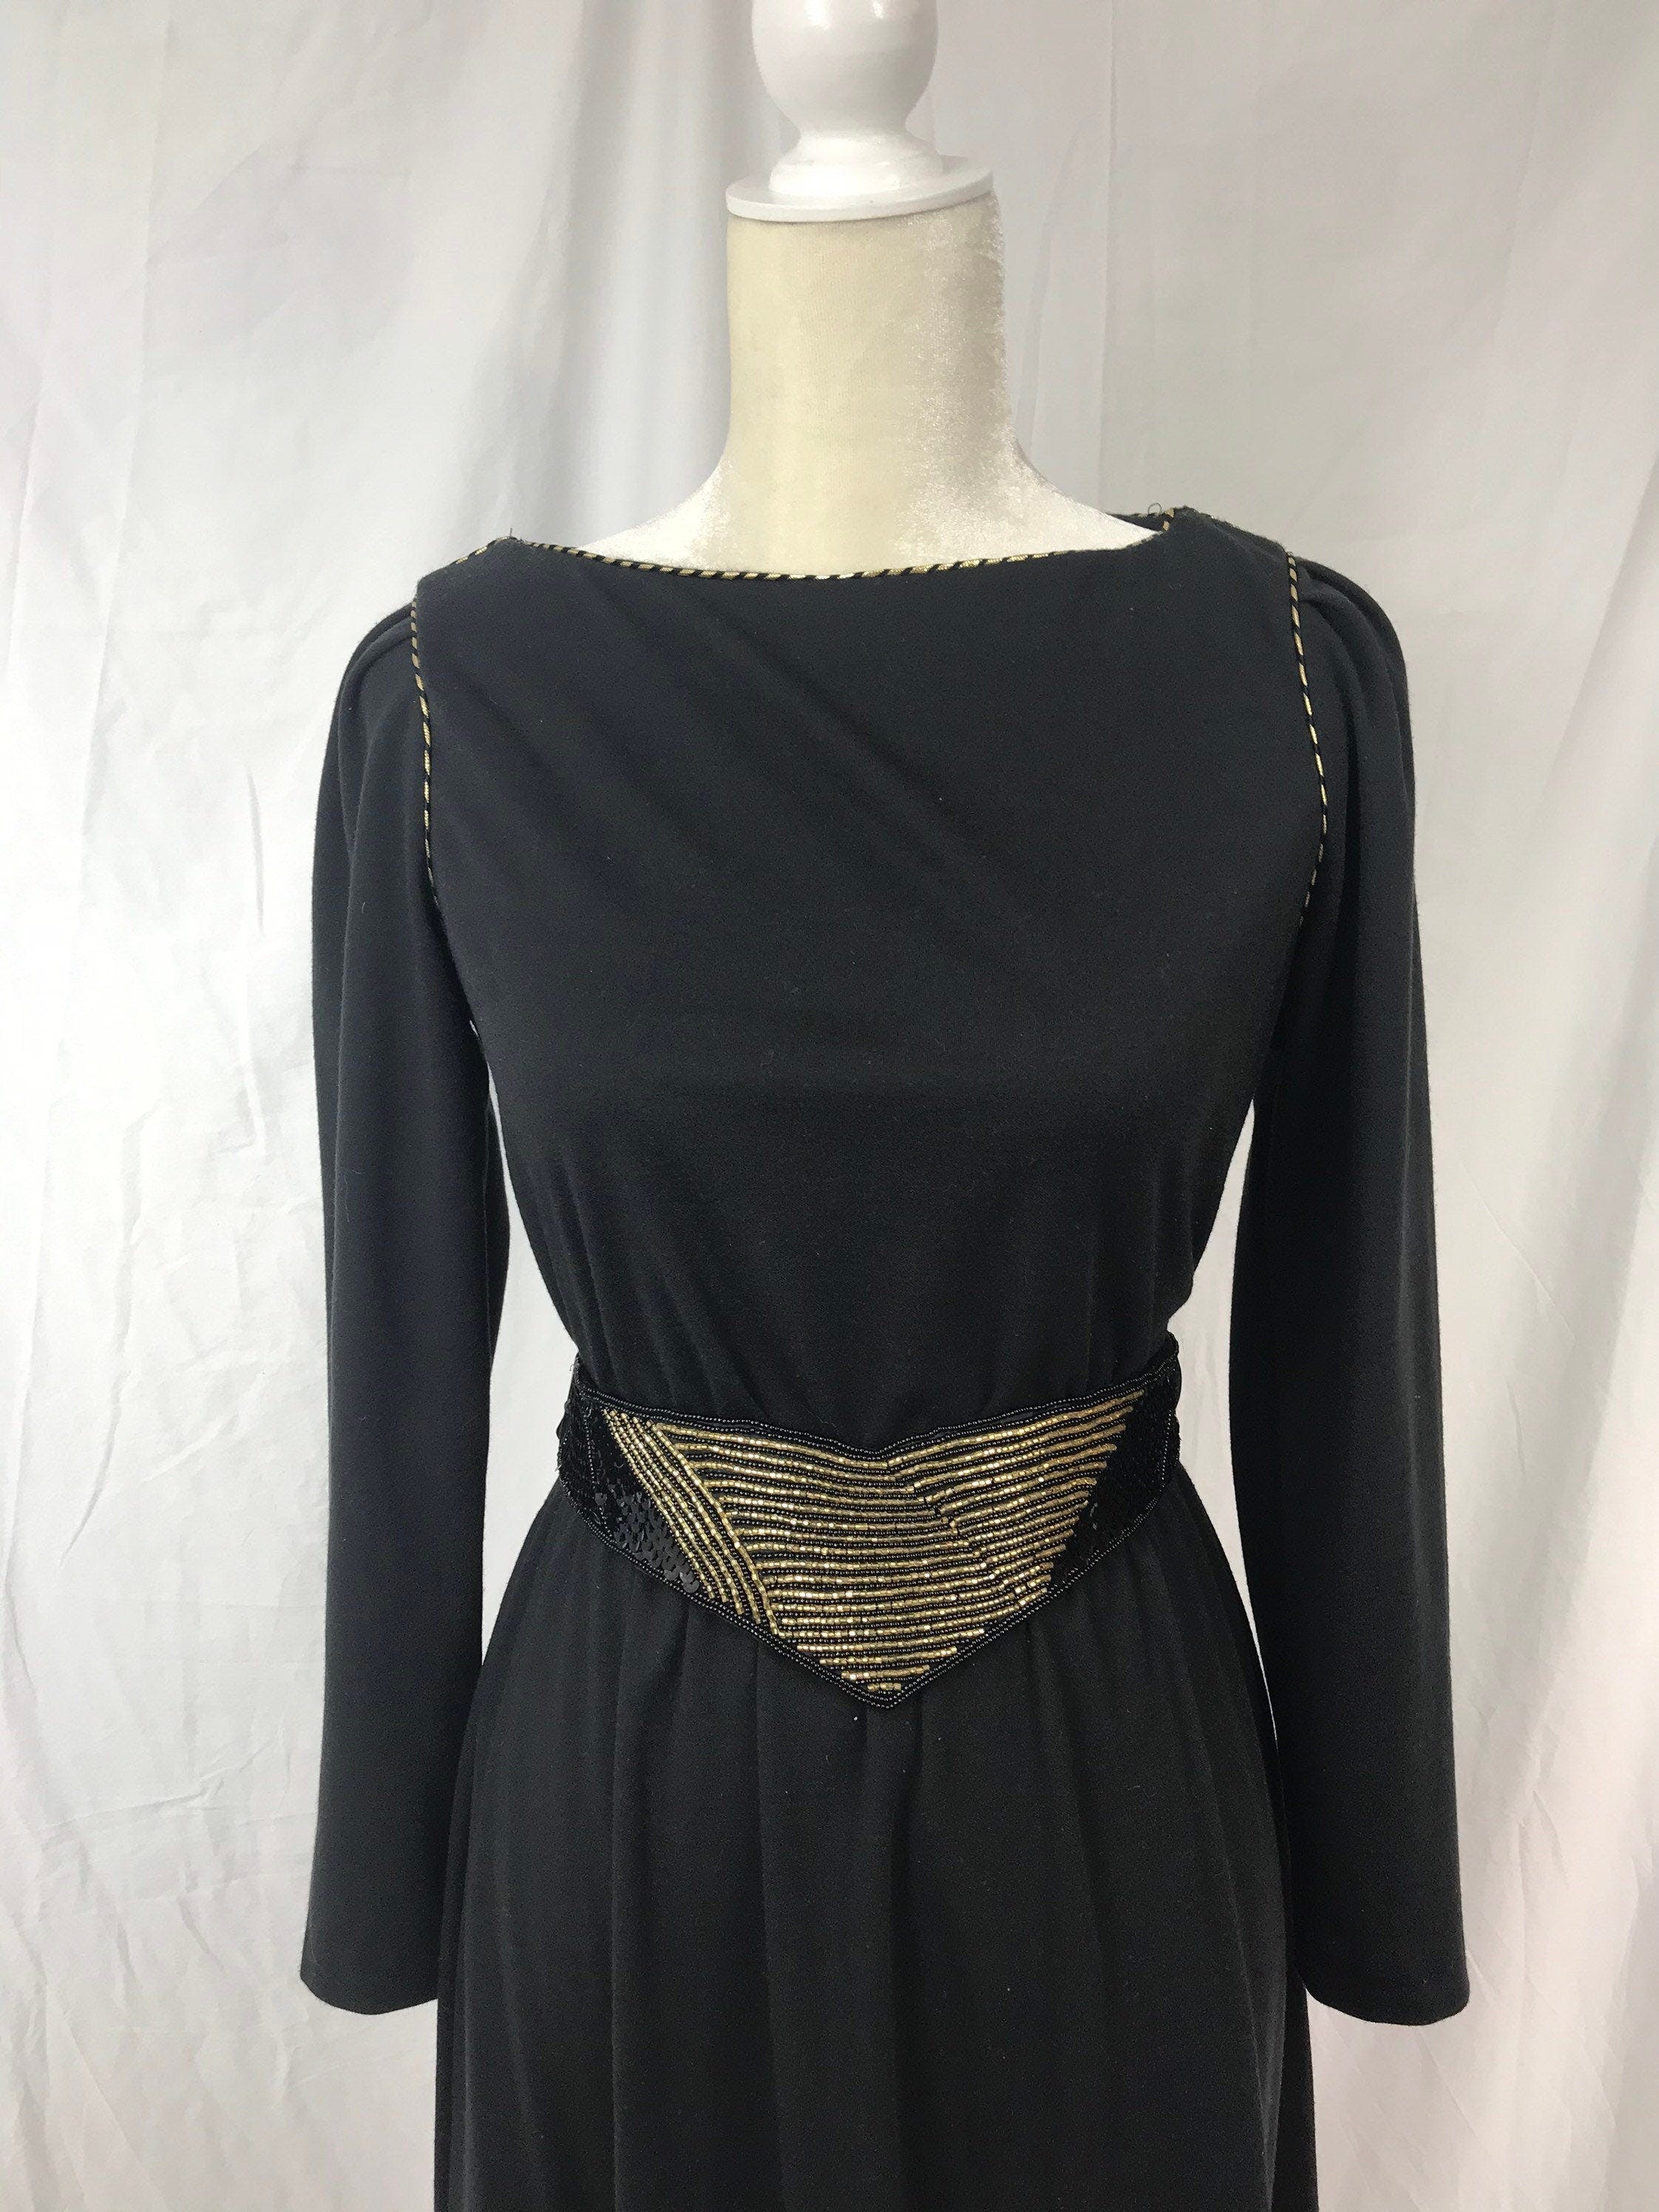 Vintage 70's Black Dress with Gold and Black Sequin Belt | Shop THRILLING